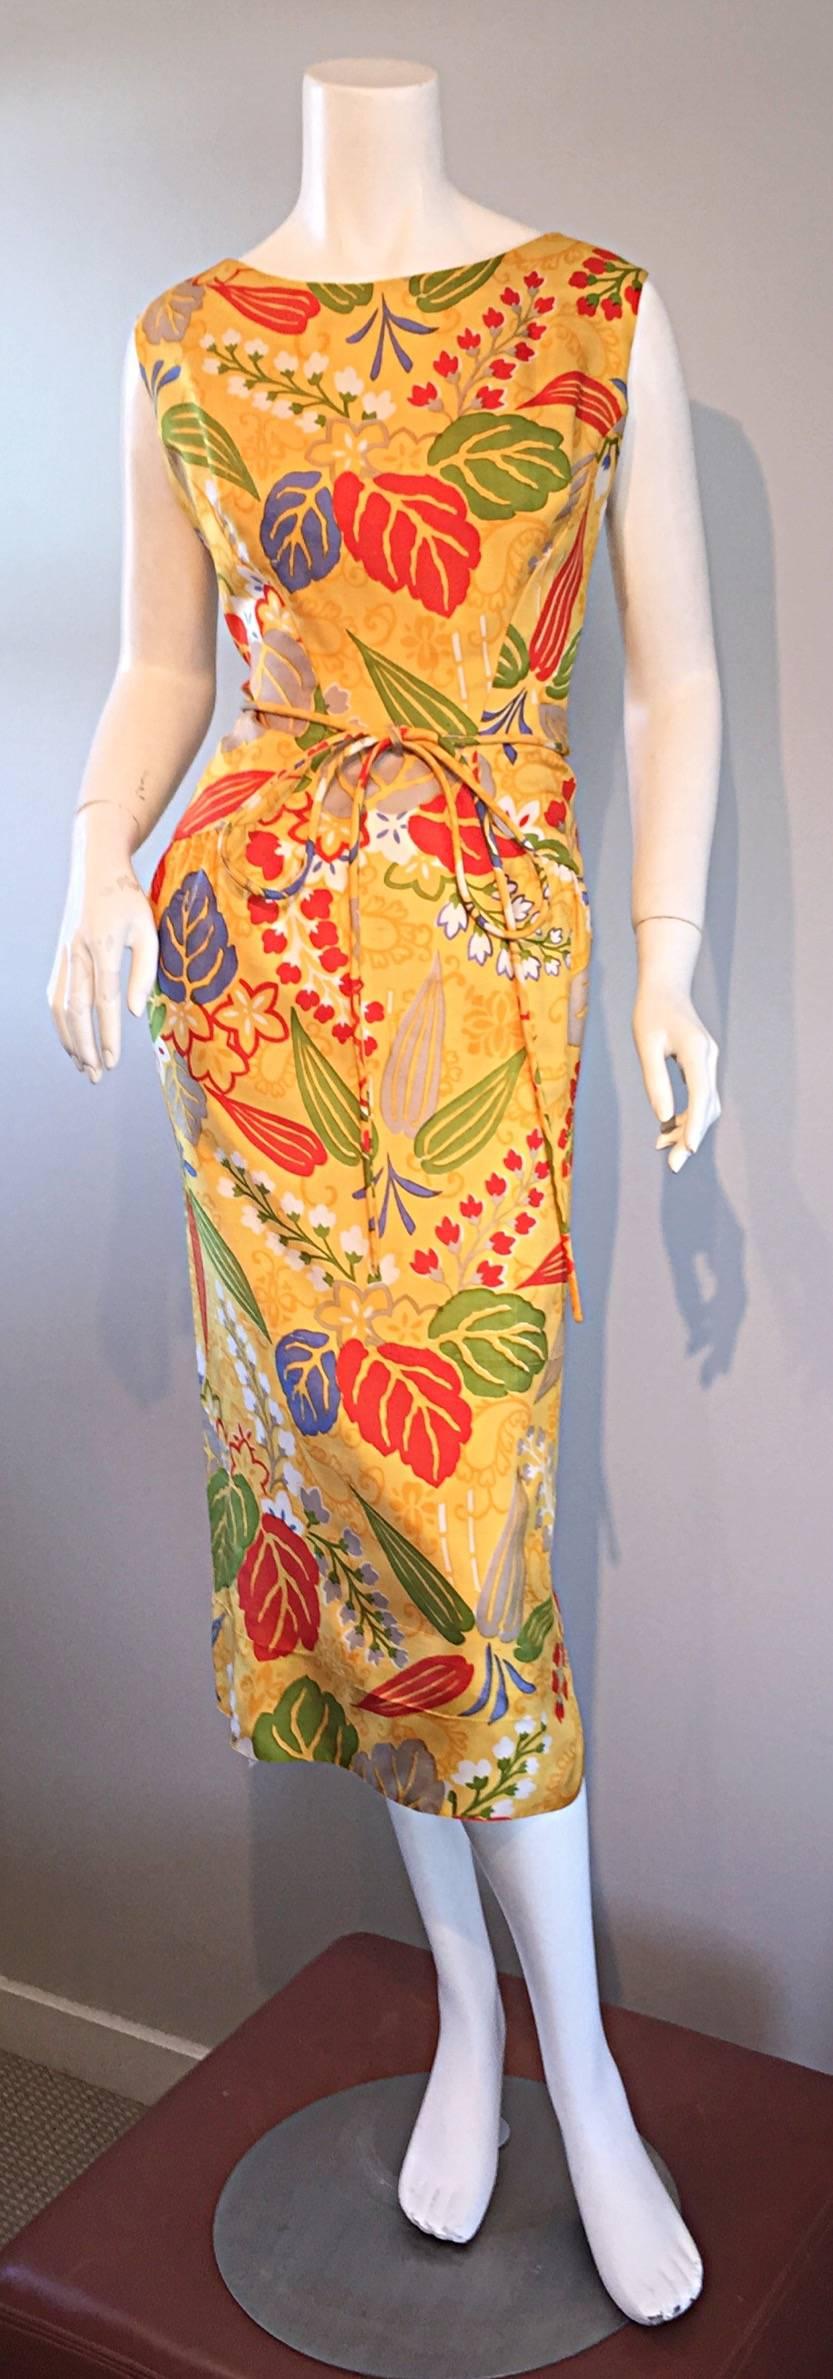 adele simpson vintage dress